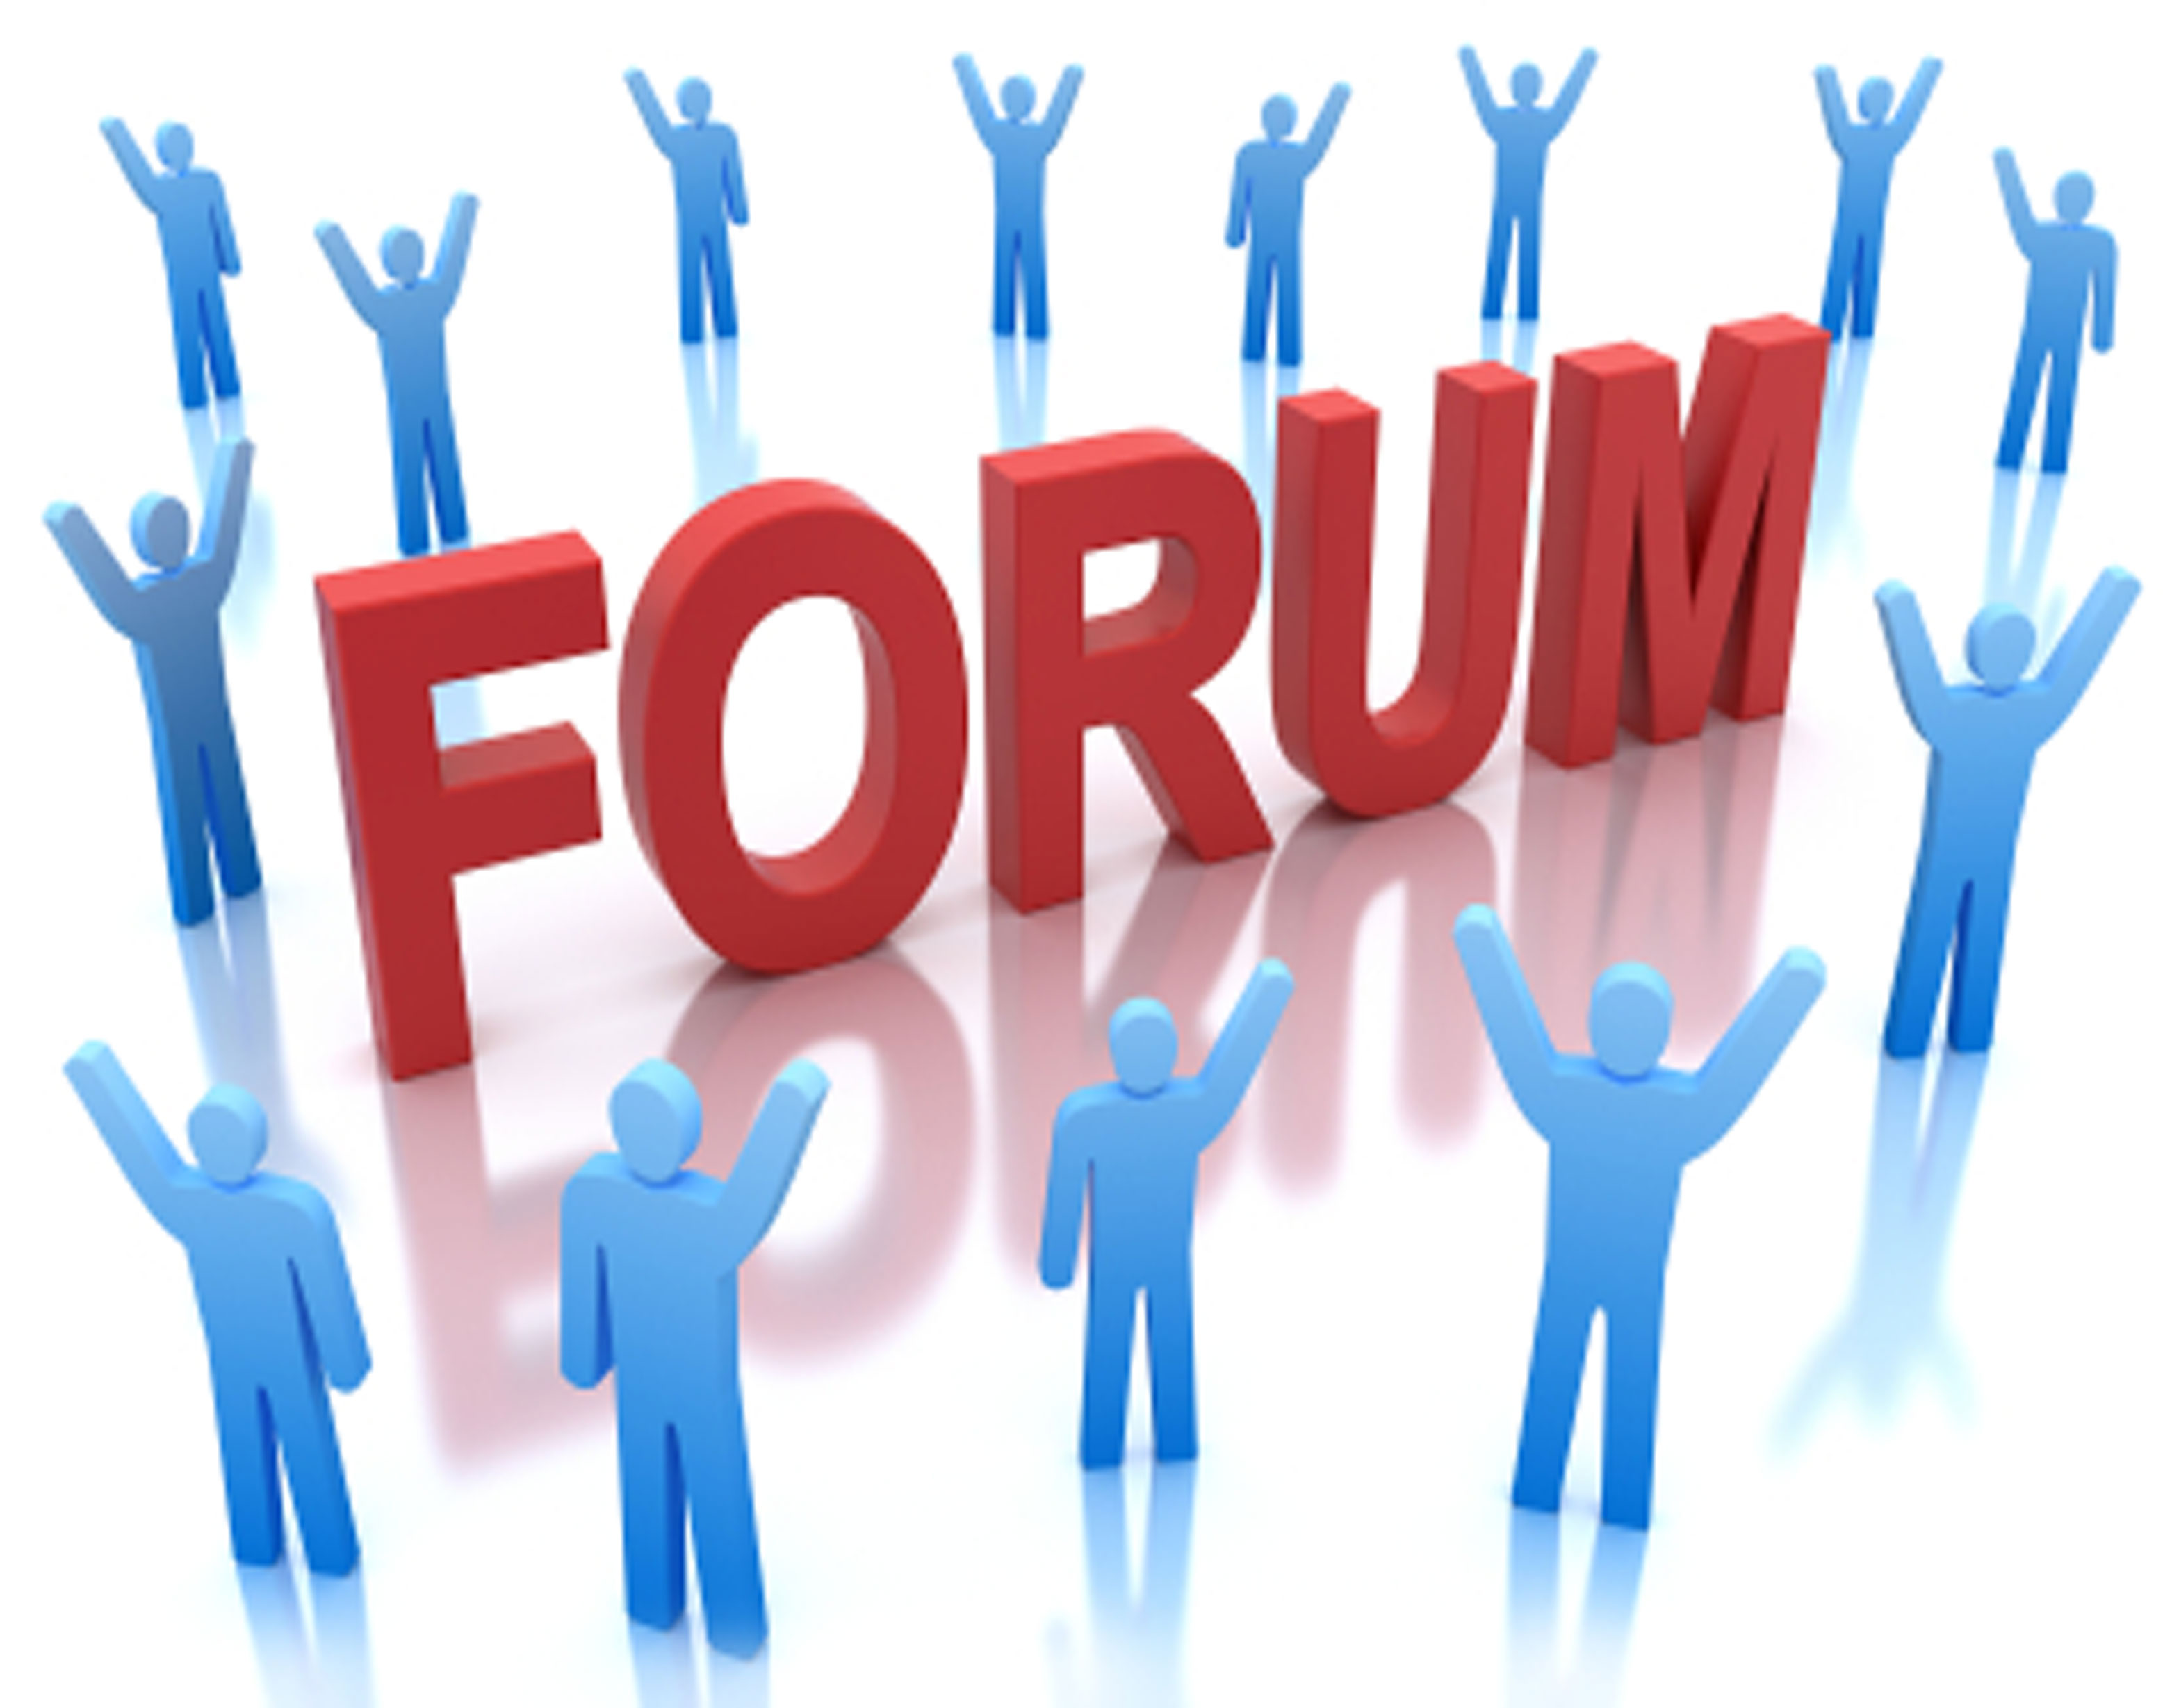 Этою forum. Тематические форумы и блоги. Интернет форум. Картинки для форума. Веб форум.